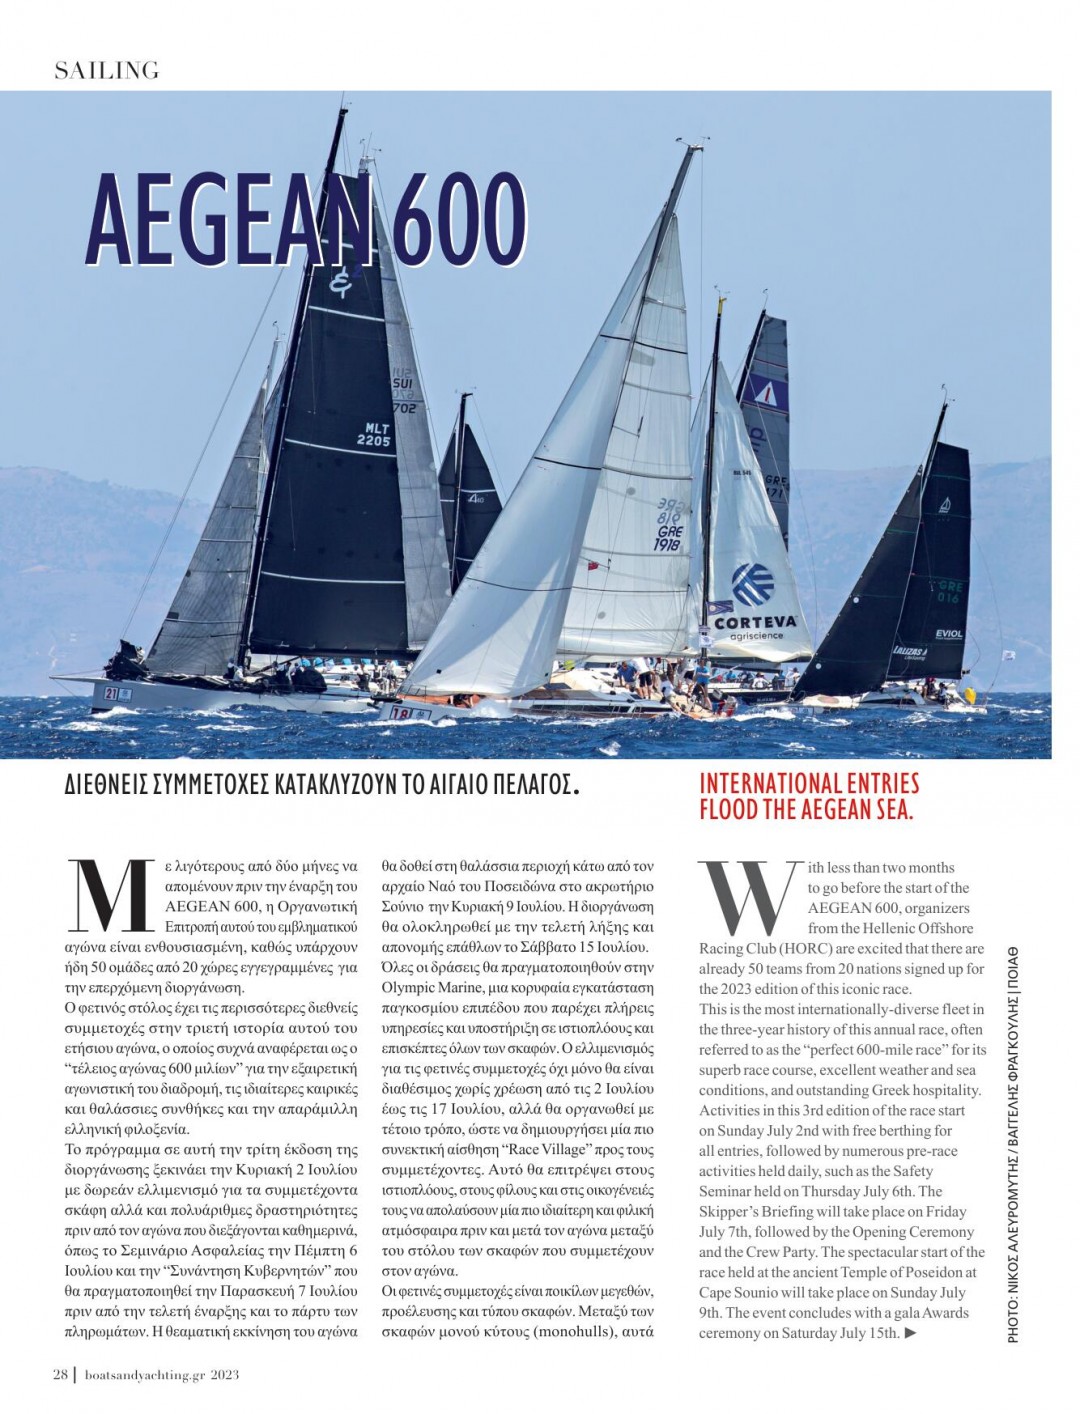 AEGEAN 600